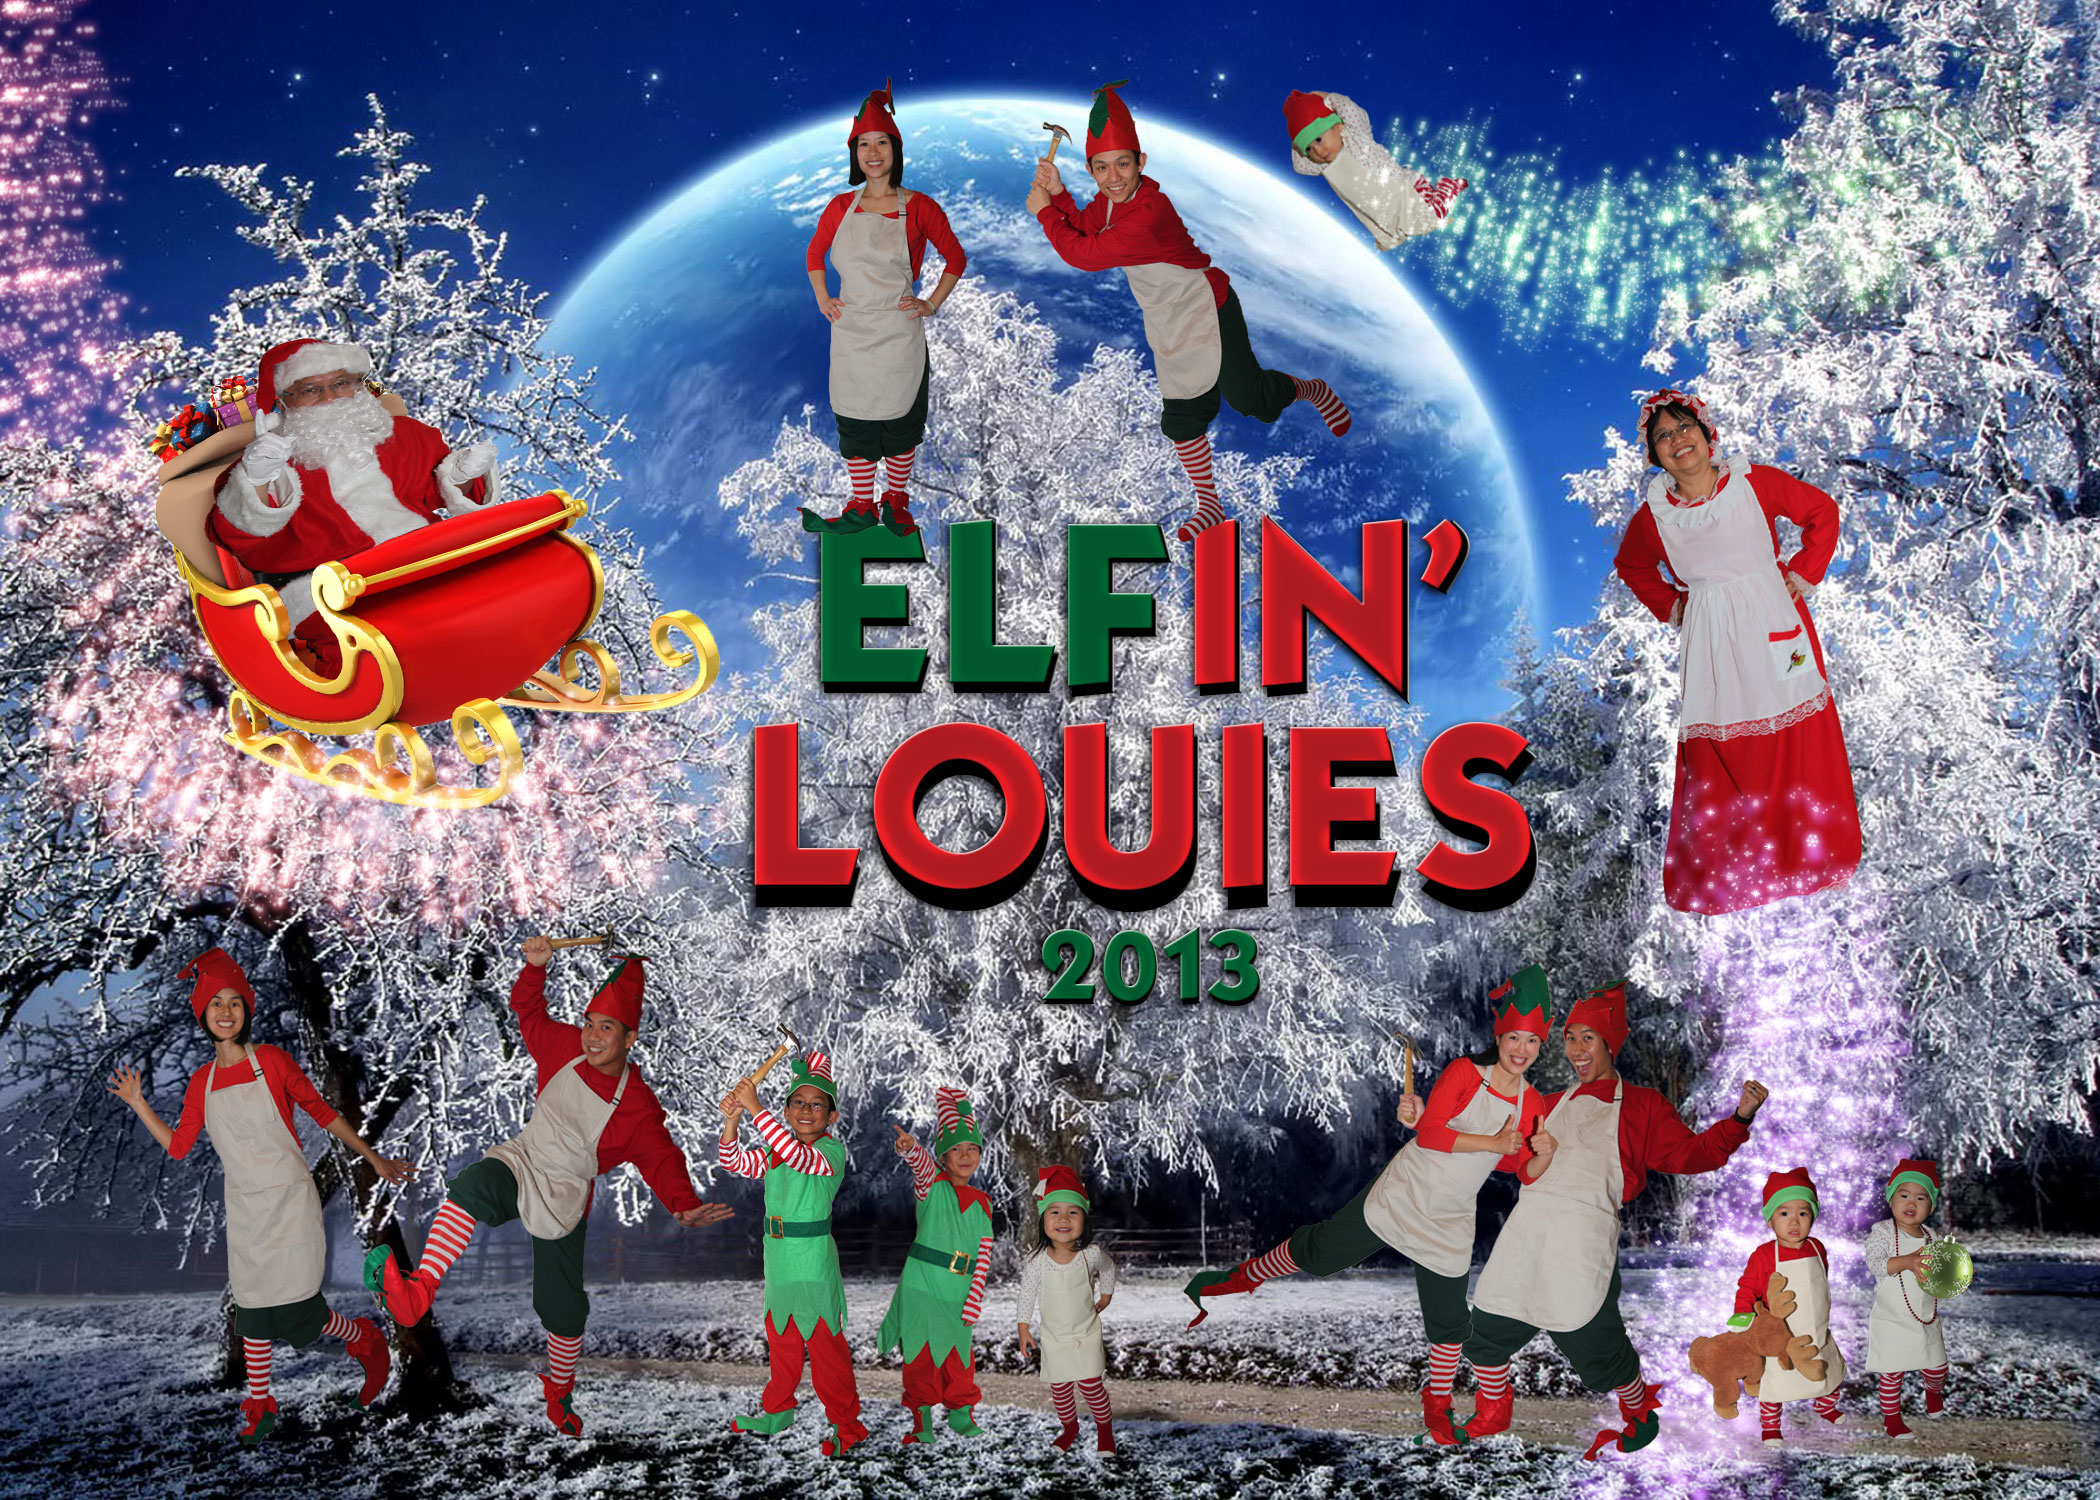 ELFin’ Louies 2013